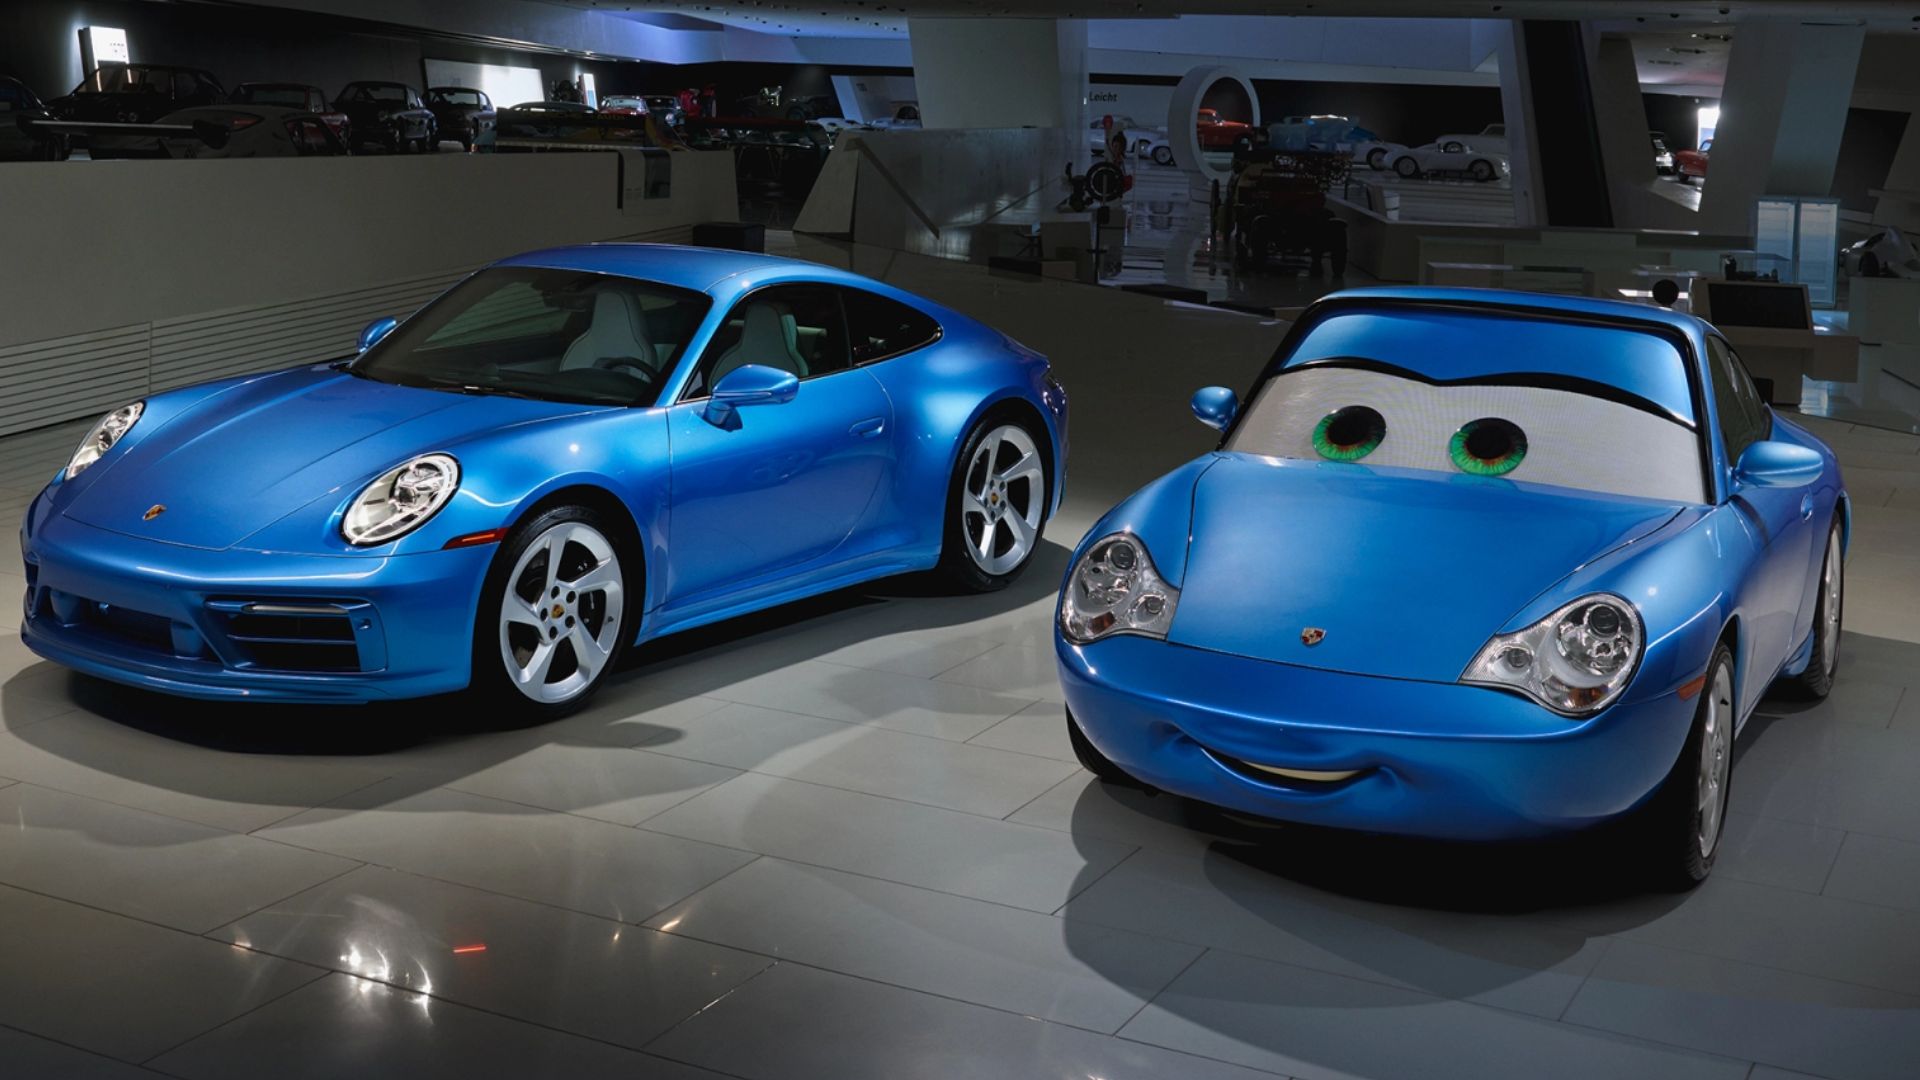 Comparação Sally Carrerra e Porsche 911 Sally